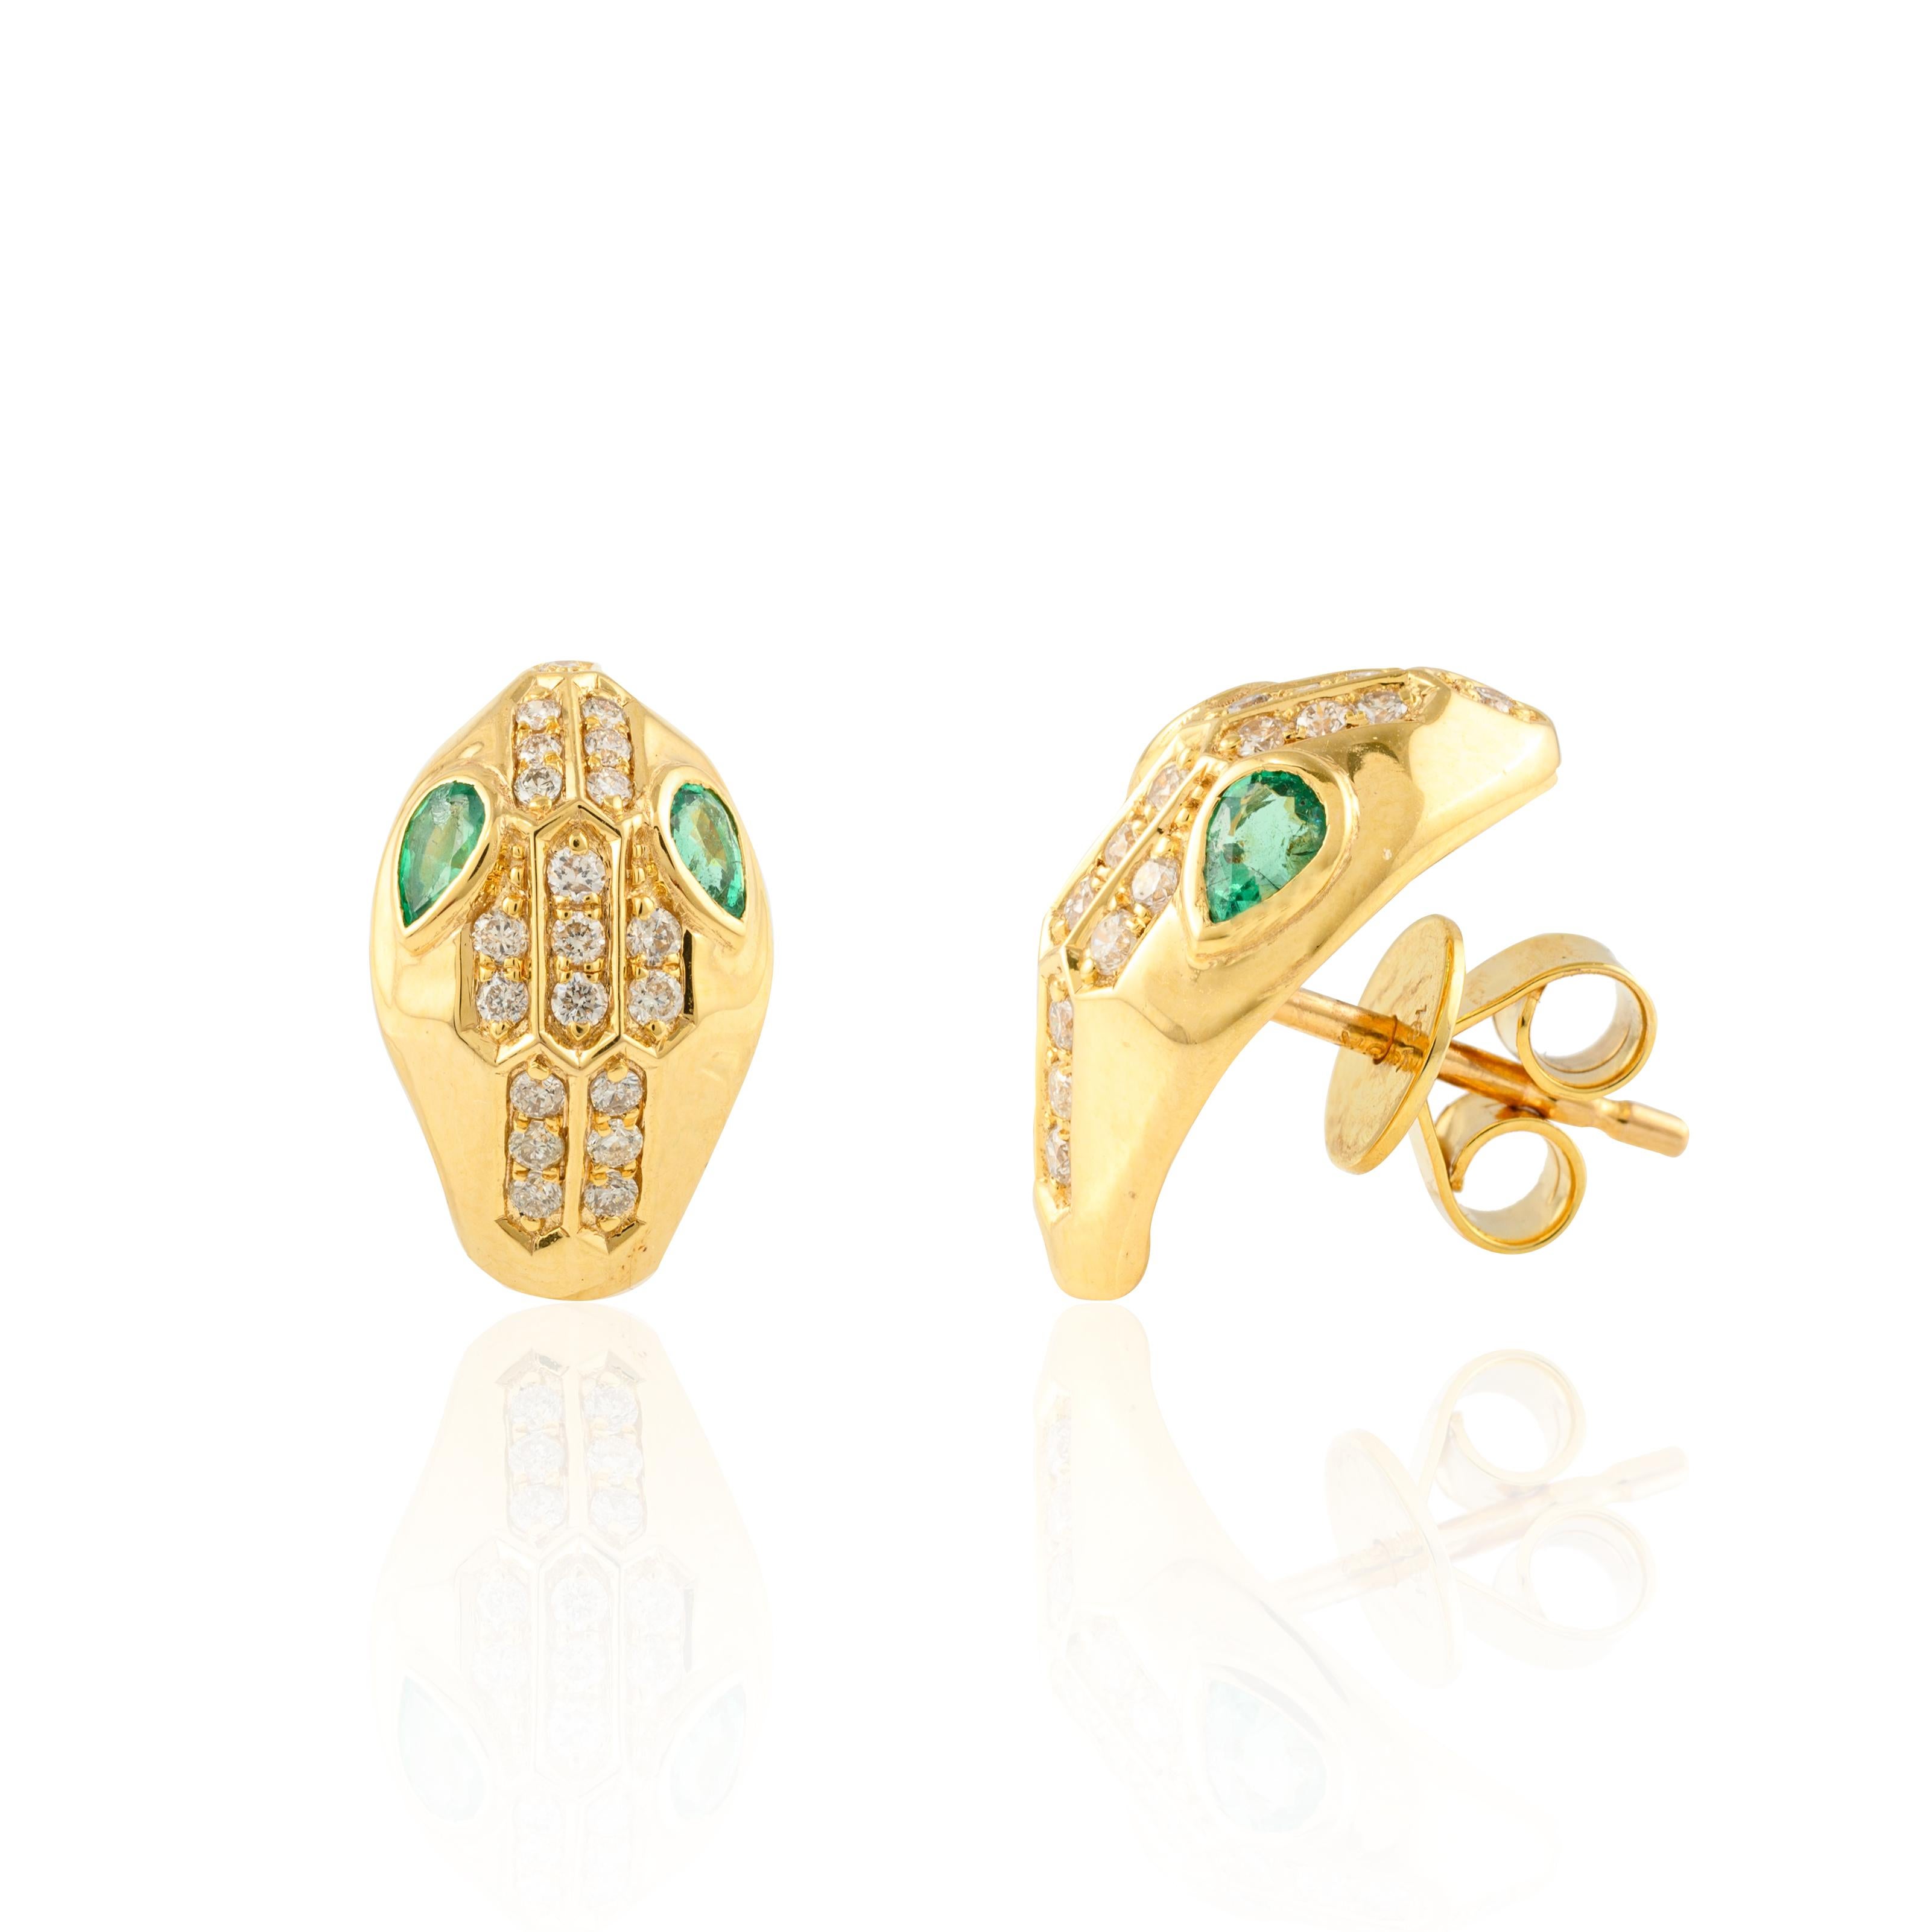 Smaragd-Diamant-Serpentine Pushback-Ohrstecker in 18K Gold mit Diamanten, um Ihren Look zu unterstreichen. Diese Ohrringe mit einem Smaragd im Birnenschliff sorgen für einen funkelnden, luxuriösen Look.
Smaragd steigert die intellektuellen